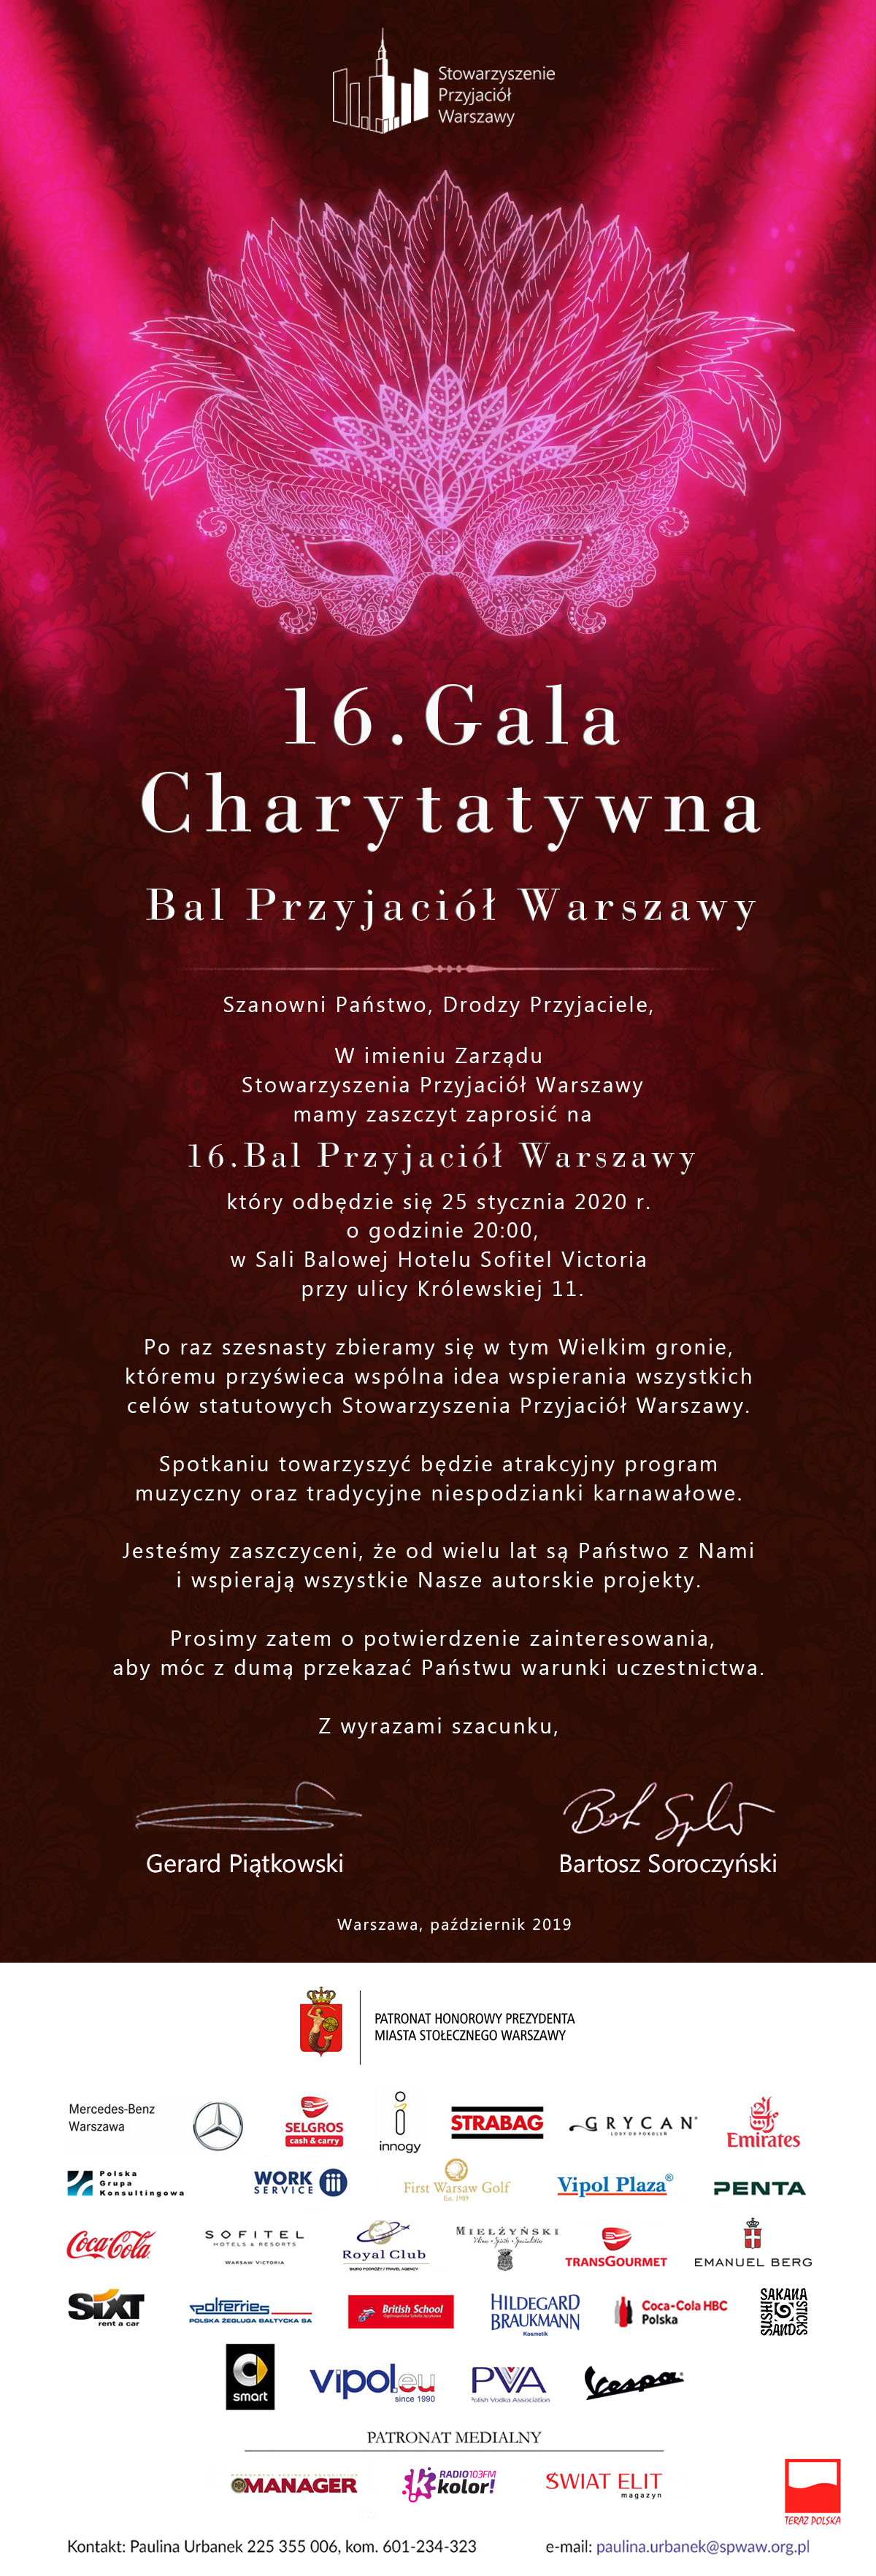 Save the date 16. Edycja Gali Charytatywnej , Bal Przyjaciół Warszawy 25 stycznia 2020, Hotel Sofitel Victoria